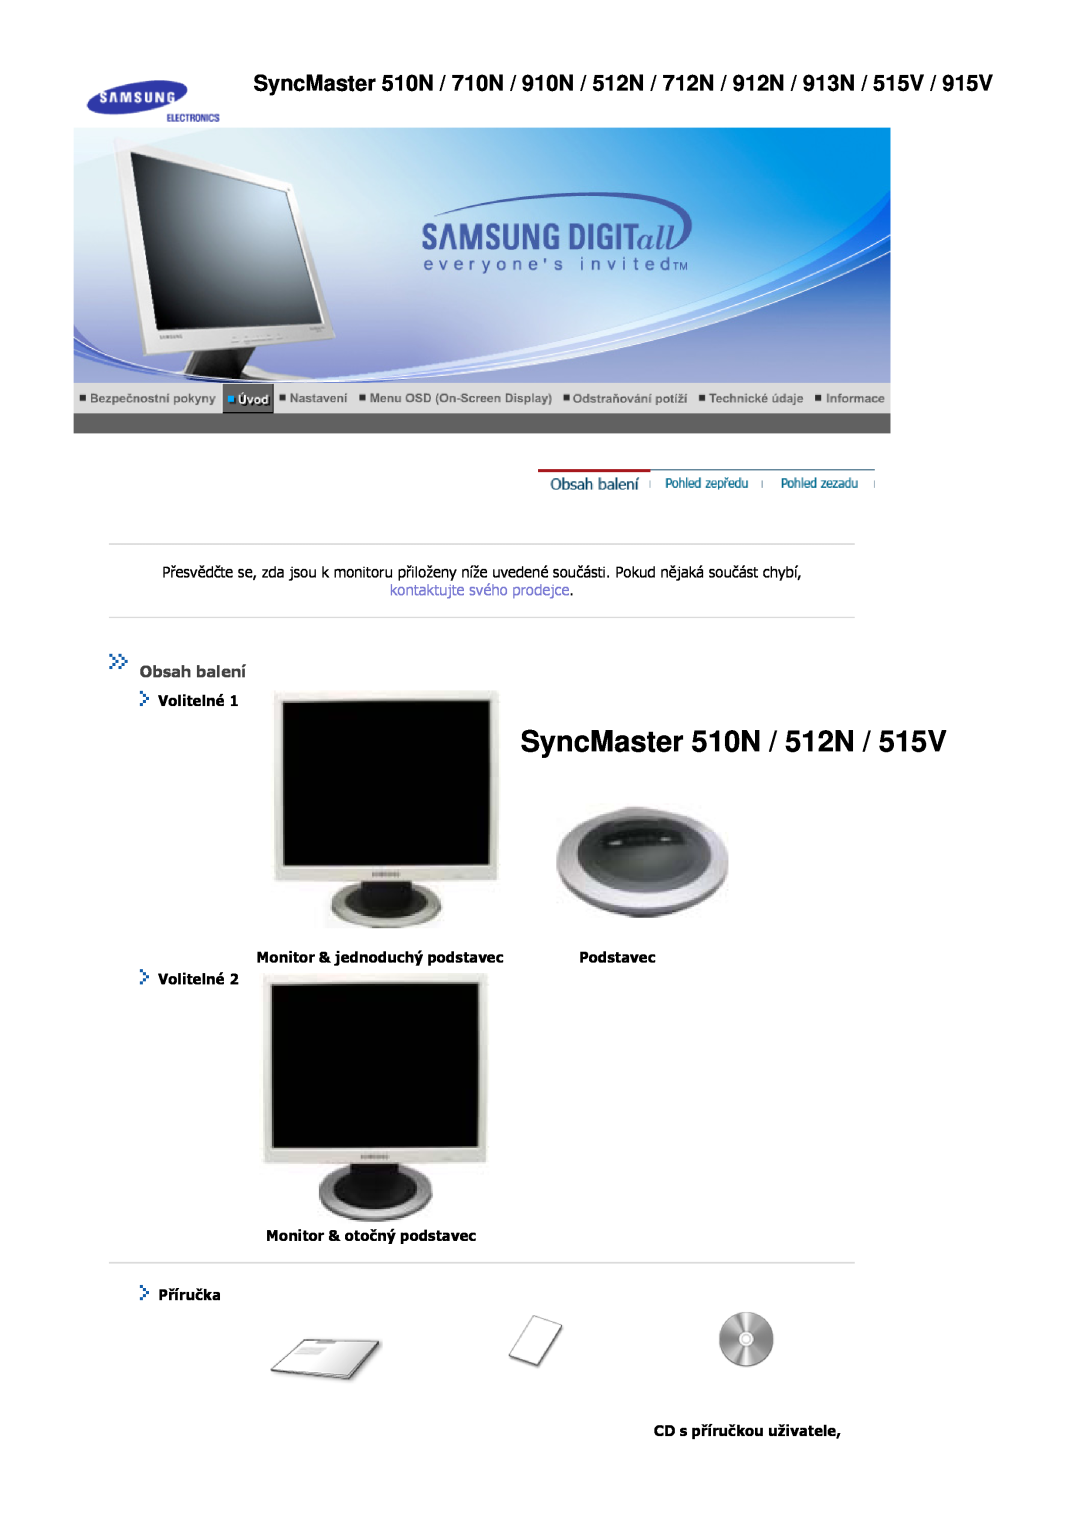 Samsung MJ19BSASQ/EDC SyncMaster 510N / 512N, SyncMaster 510N / 710N / 910N / 512N / 712N / 912N / 913N / 515V, Volitelné 